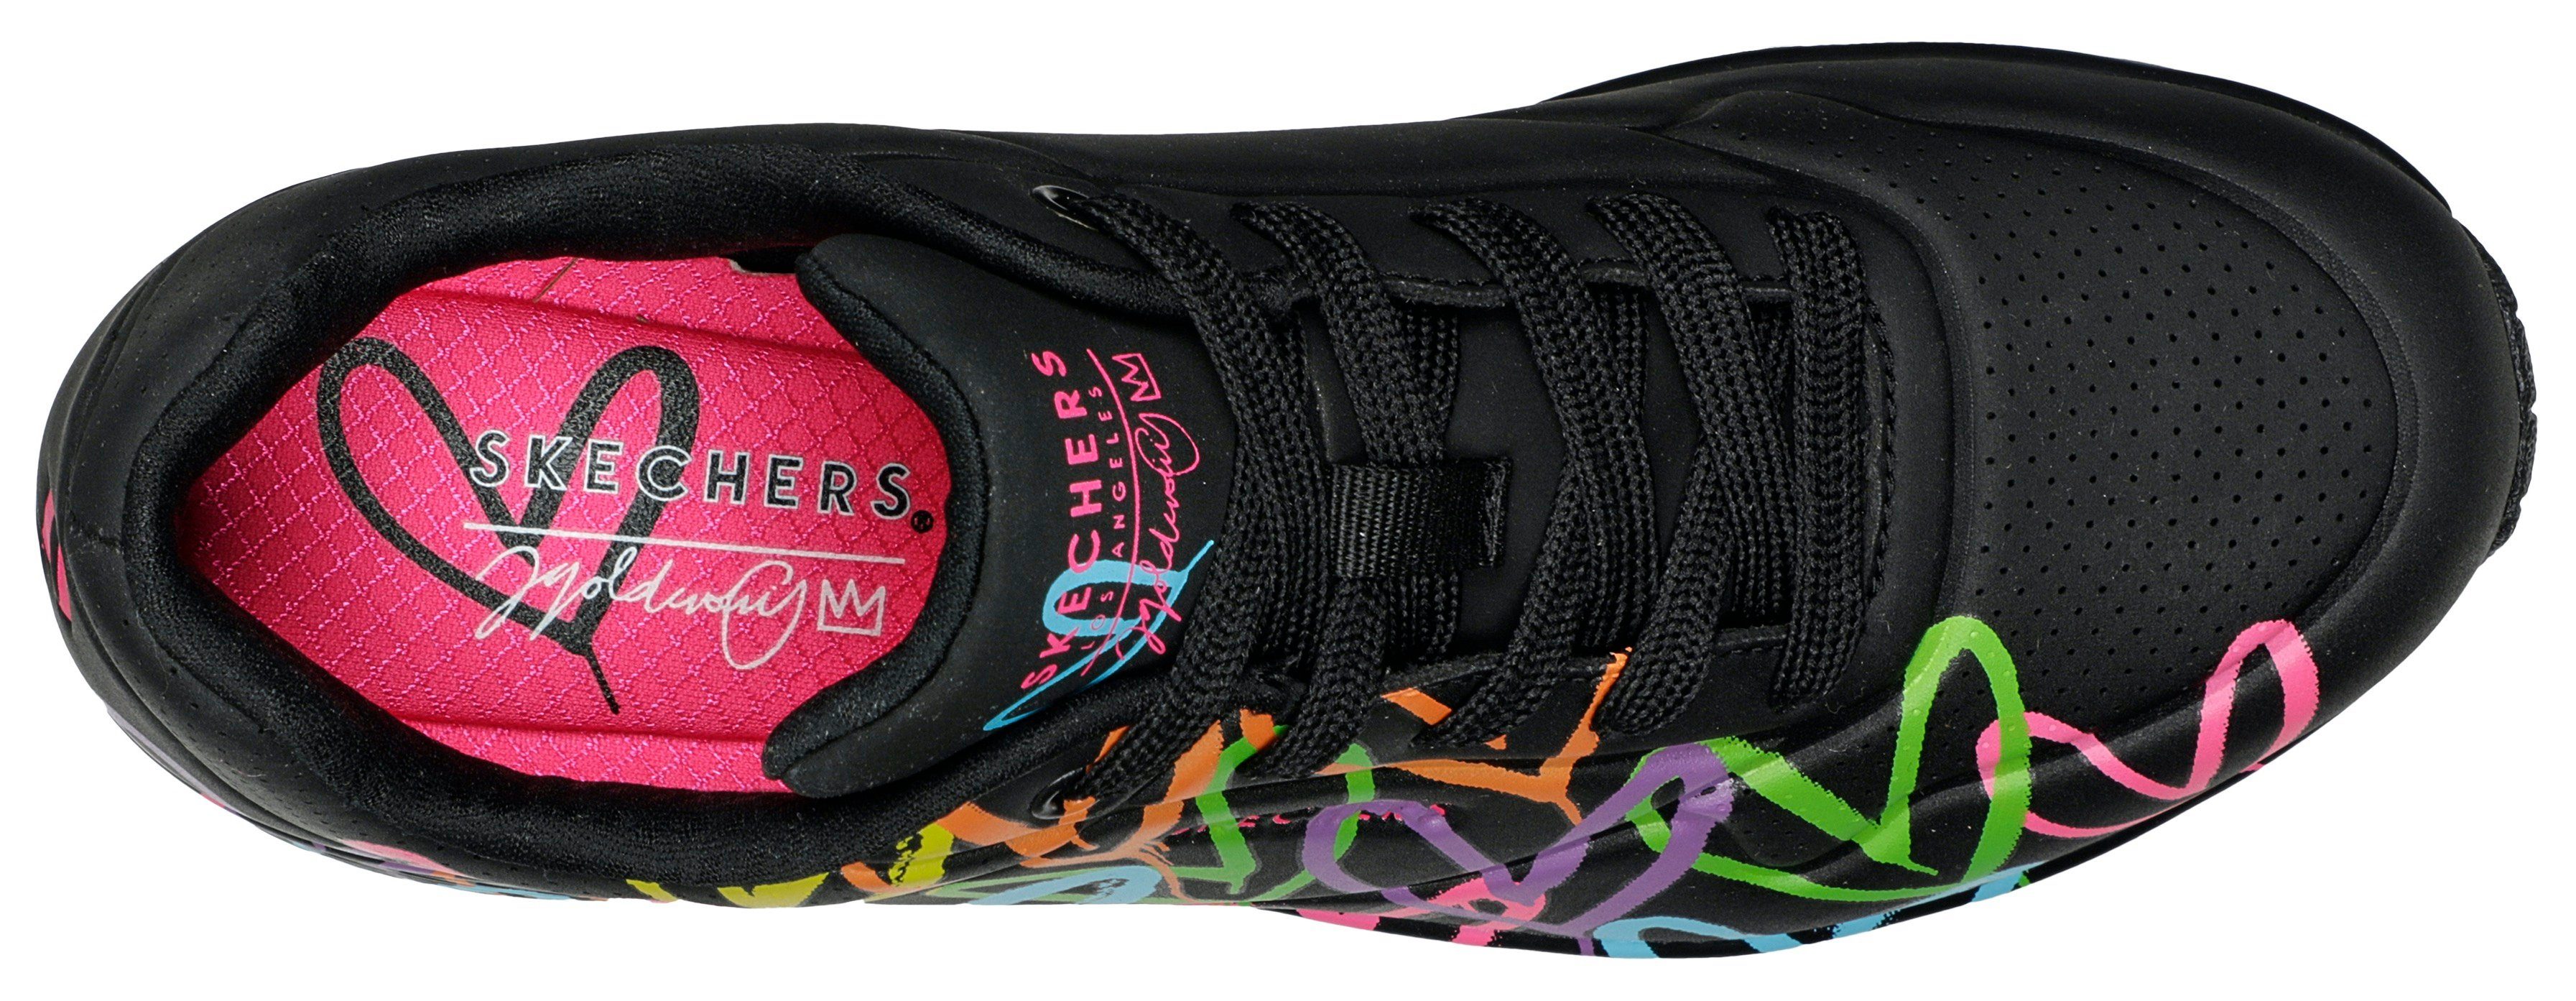 Skechers schwarz-multi Sneaker HIGHLIGHT UNO farbenfrohen mit Herzchen-Print - LOVE